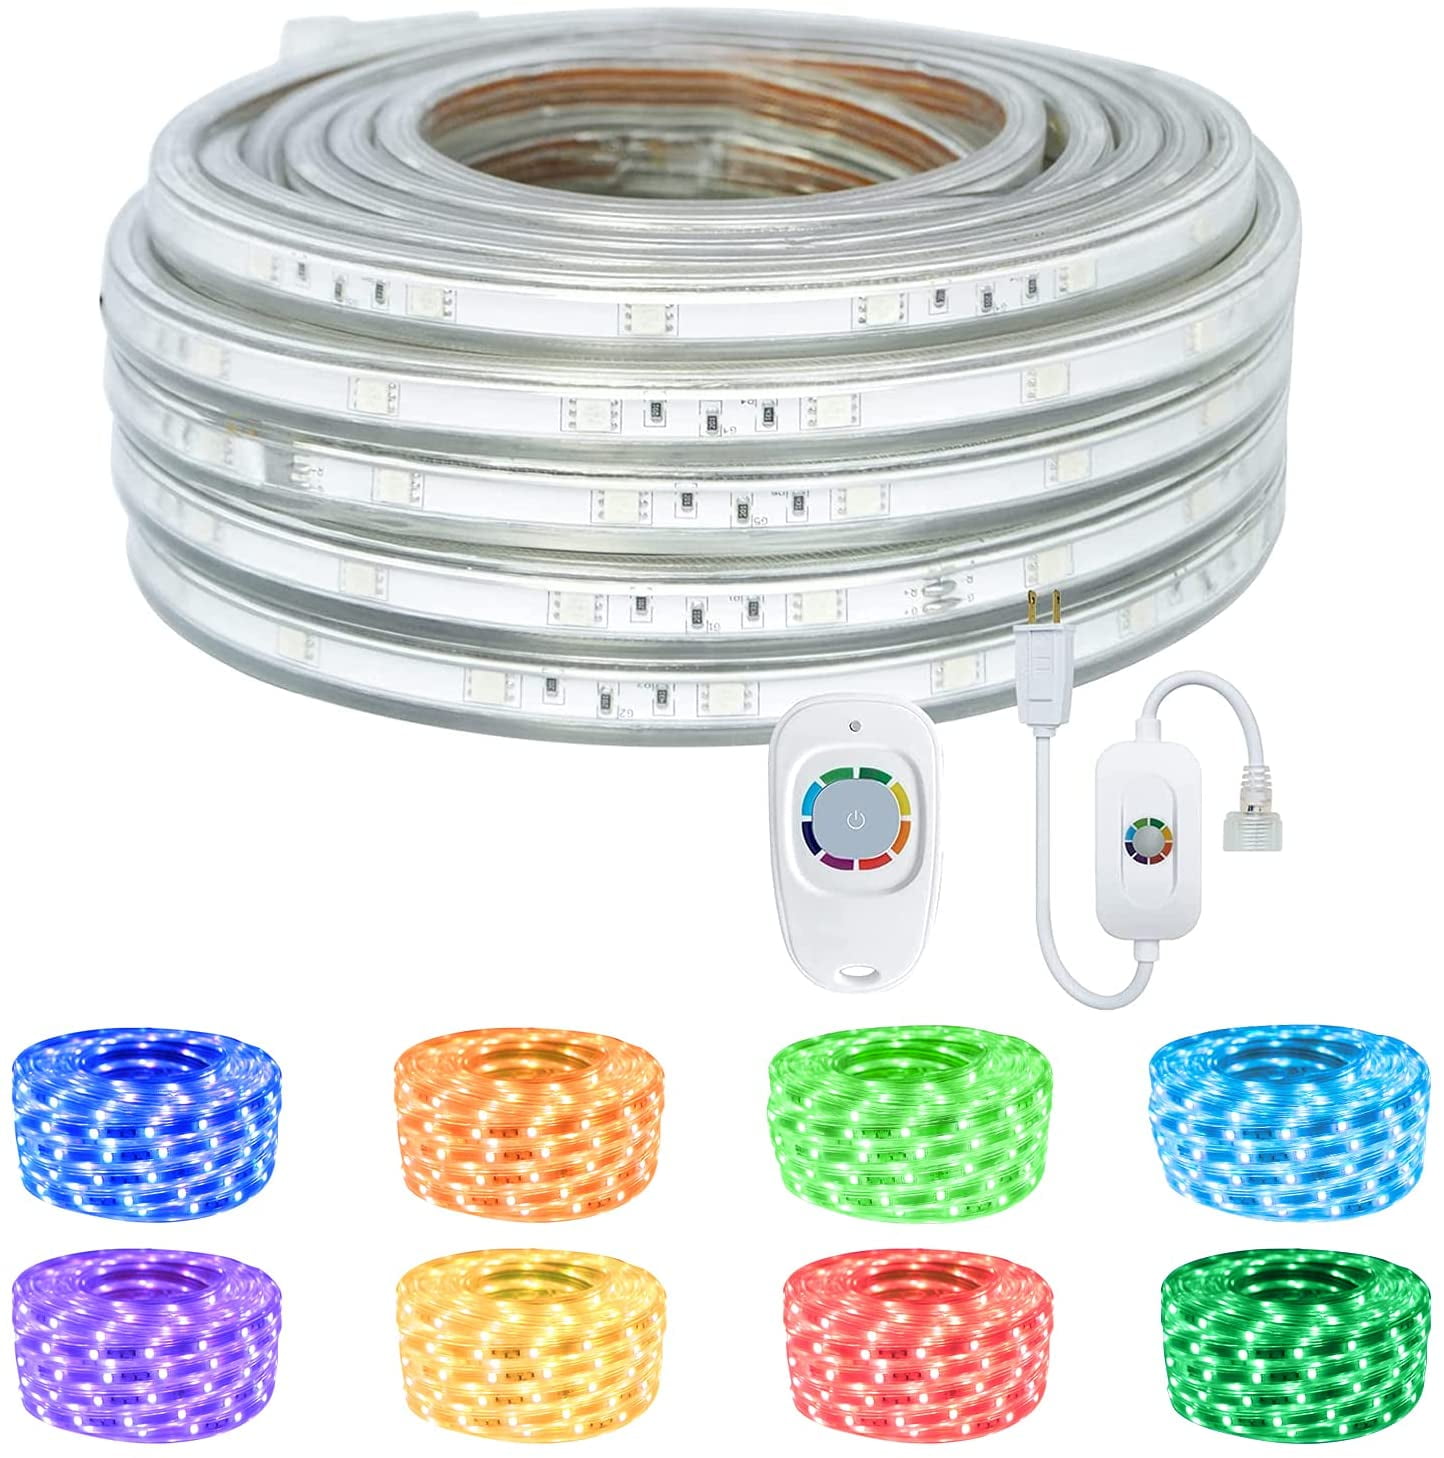 LED Rope Lights 50ft Waterproof 110V RGB Strip Light, SURNIE Color